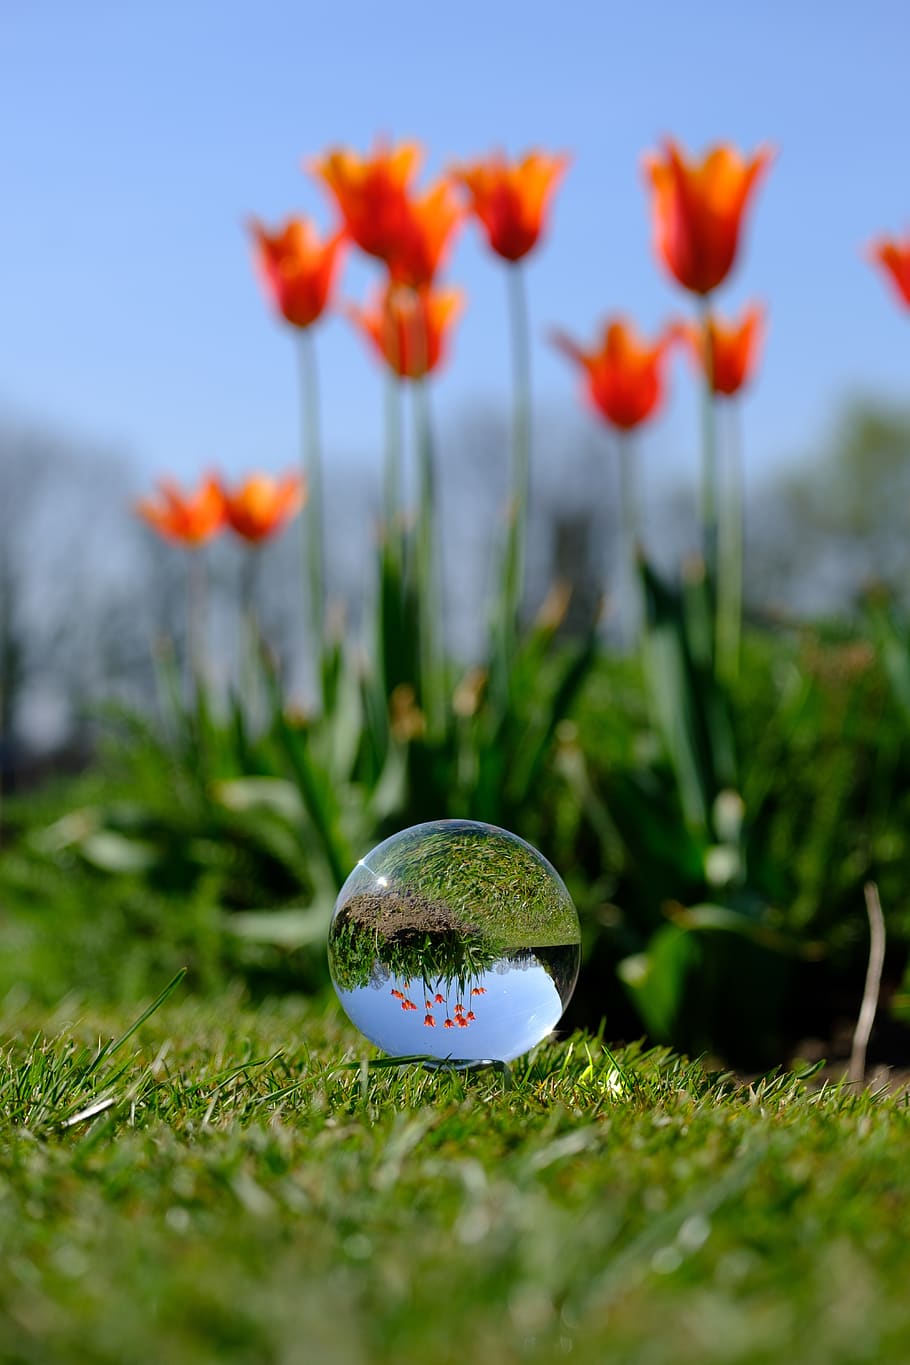 bola de cristal, fotografia, flor, yorkshire, refração, primavera, natureza, esfera de vidro, bola de vidro, retroiluminado